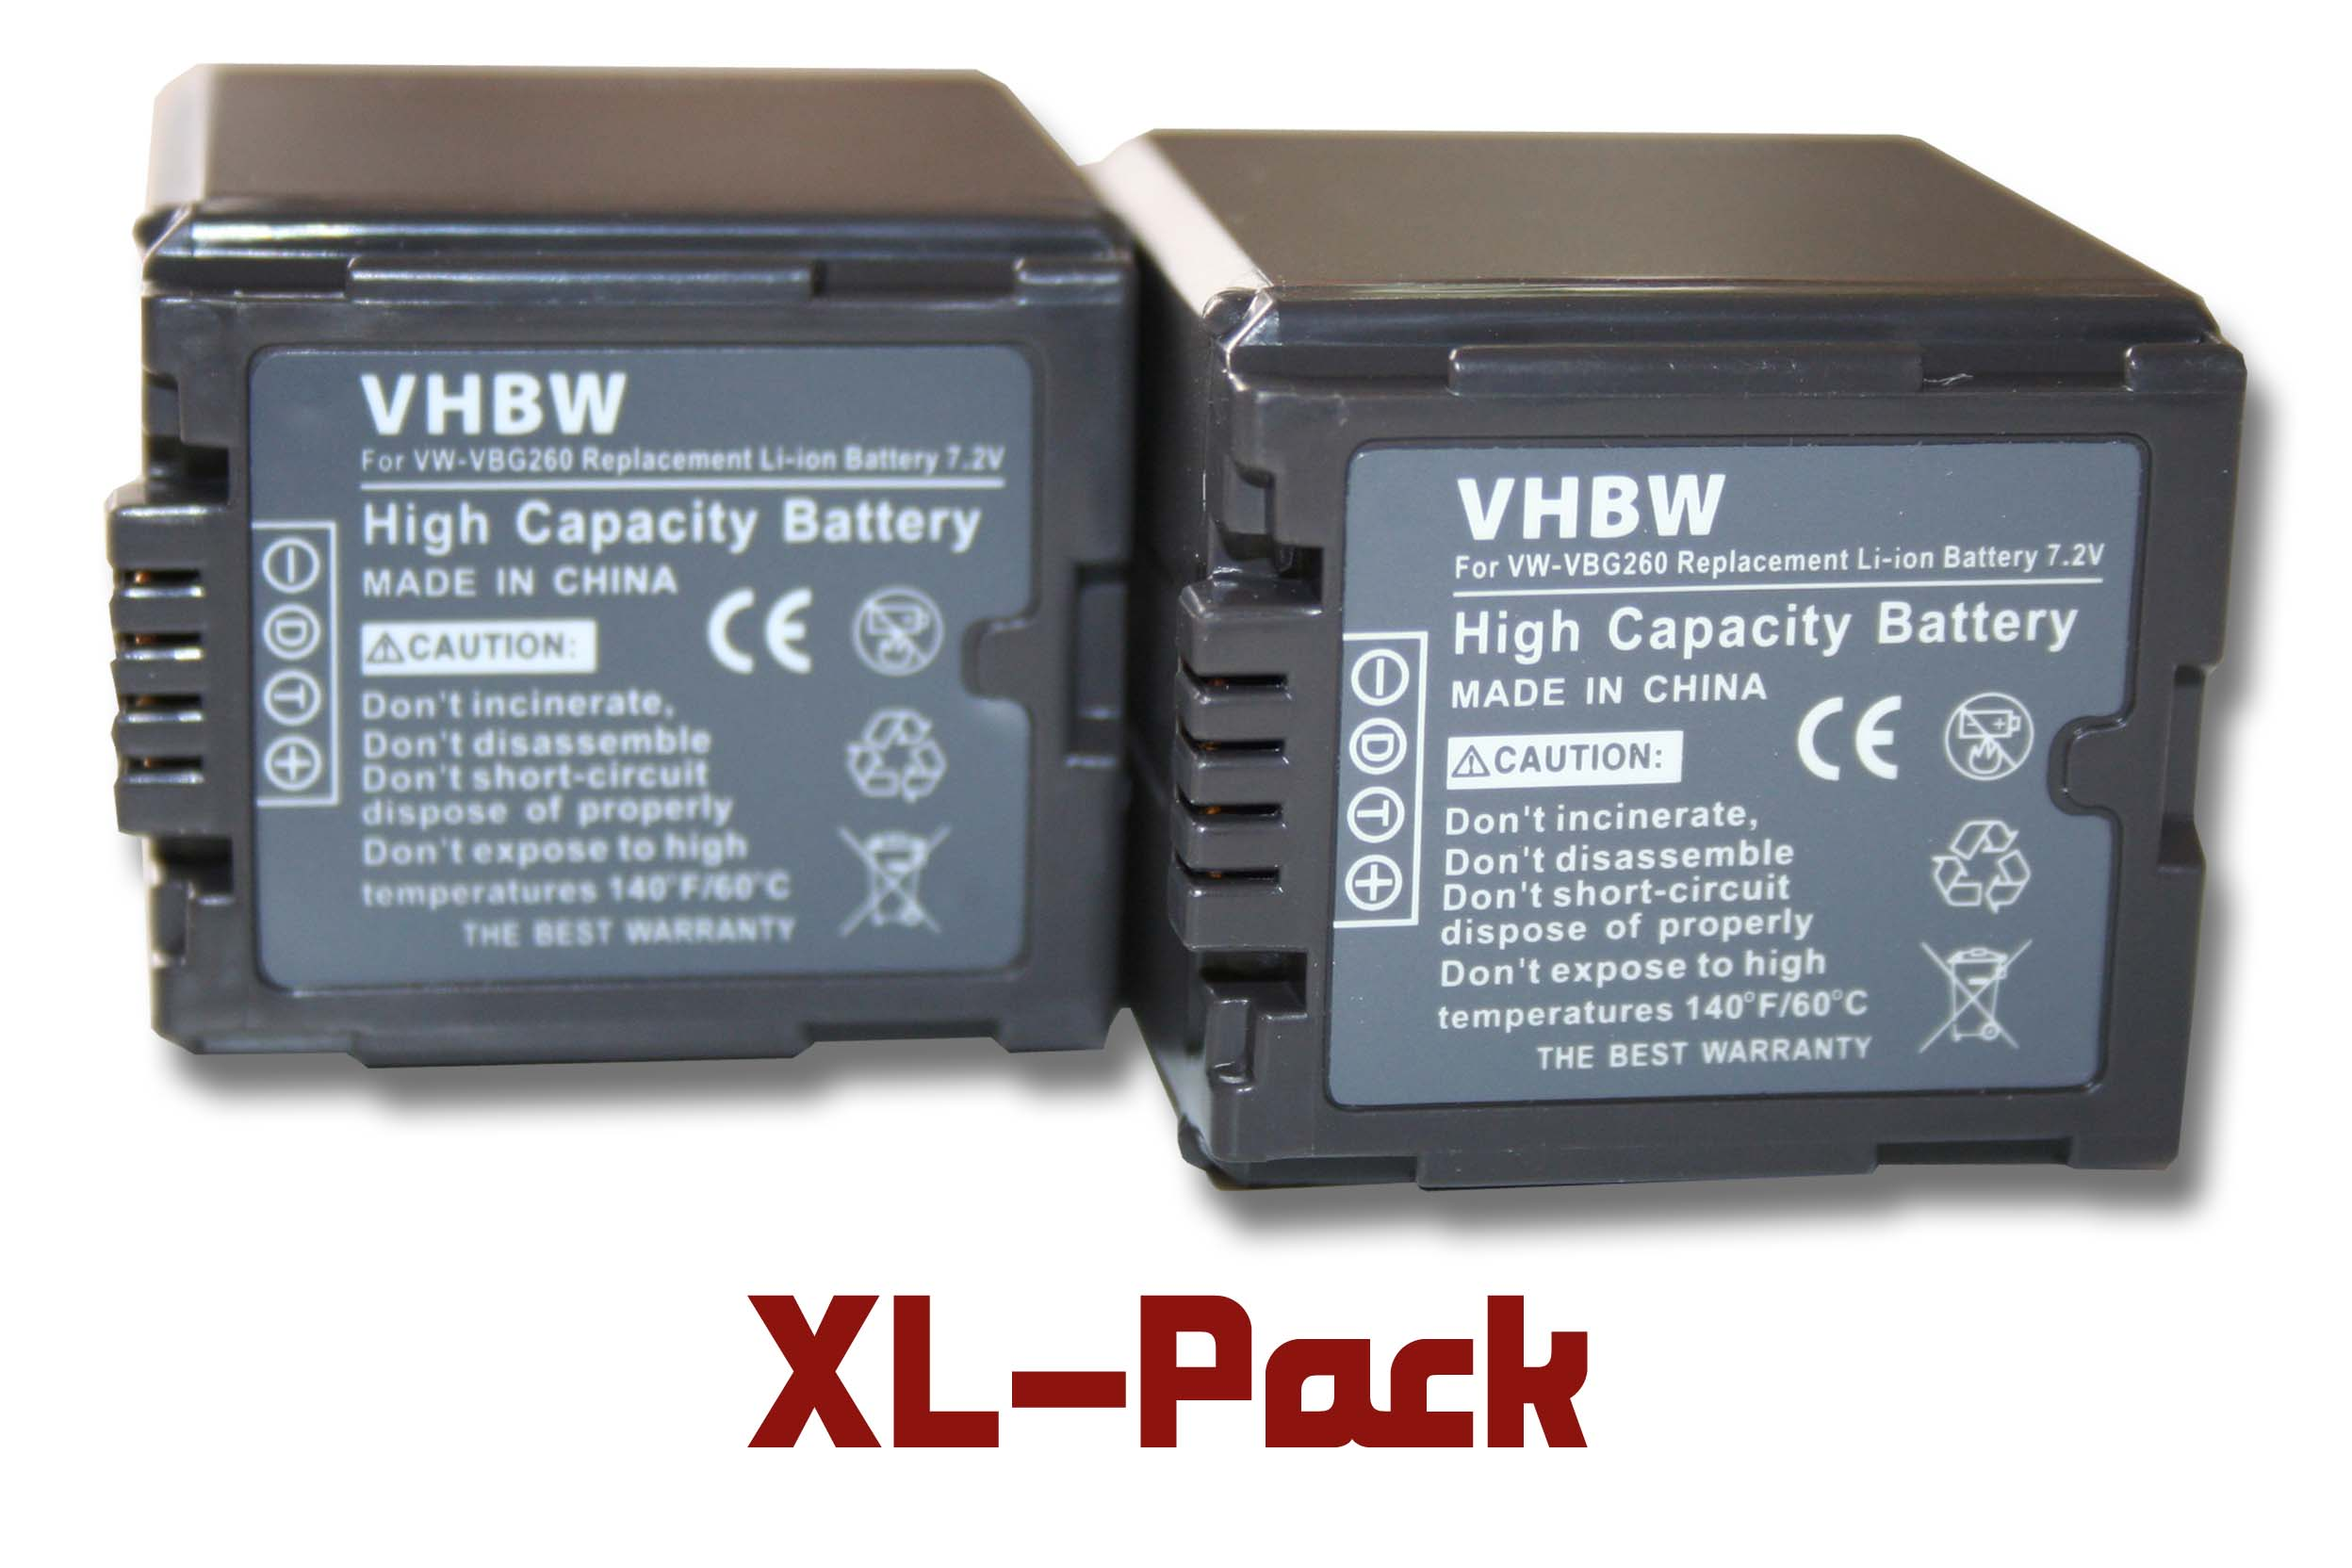 HDC-HS200, Panasonic HDC-HS100 Li-Ion HDC-HS20, HDC-HS300, HDC-DX1, VHBW - Videokamera, Akku Volt, kompatibel mit 7.2 2000